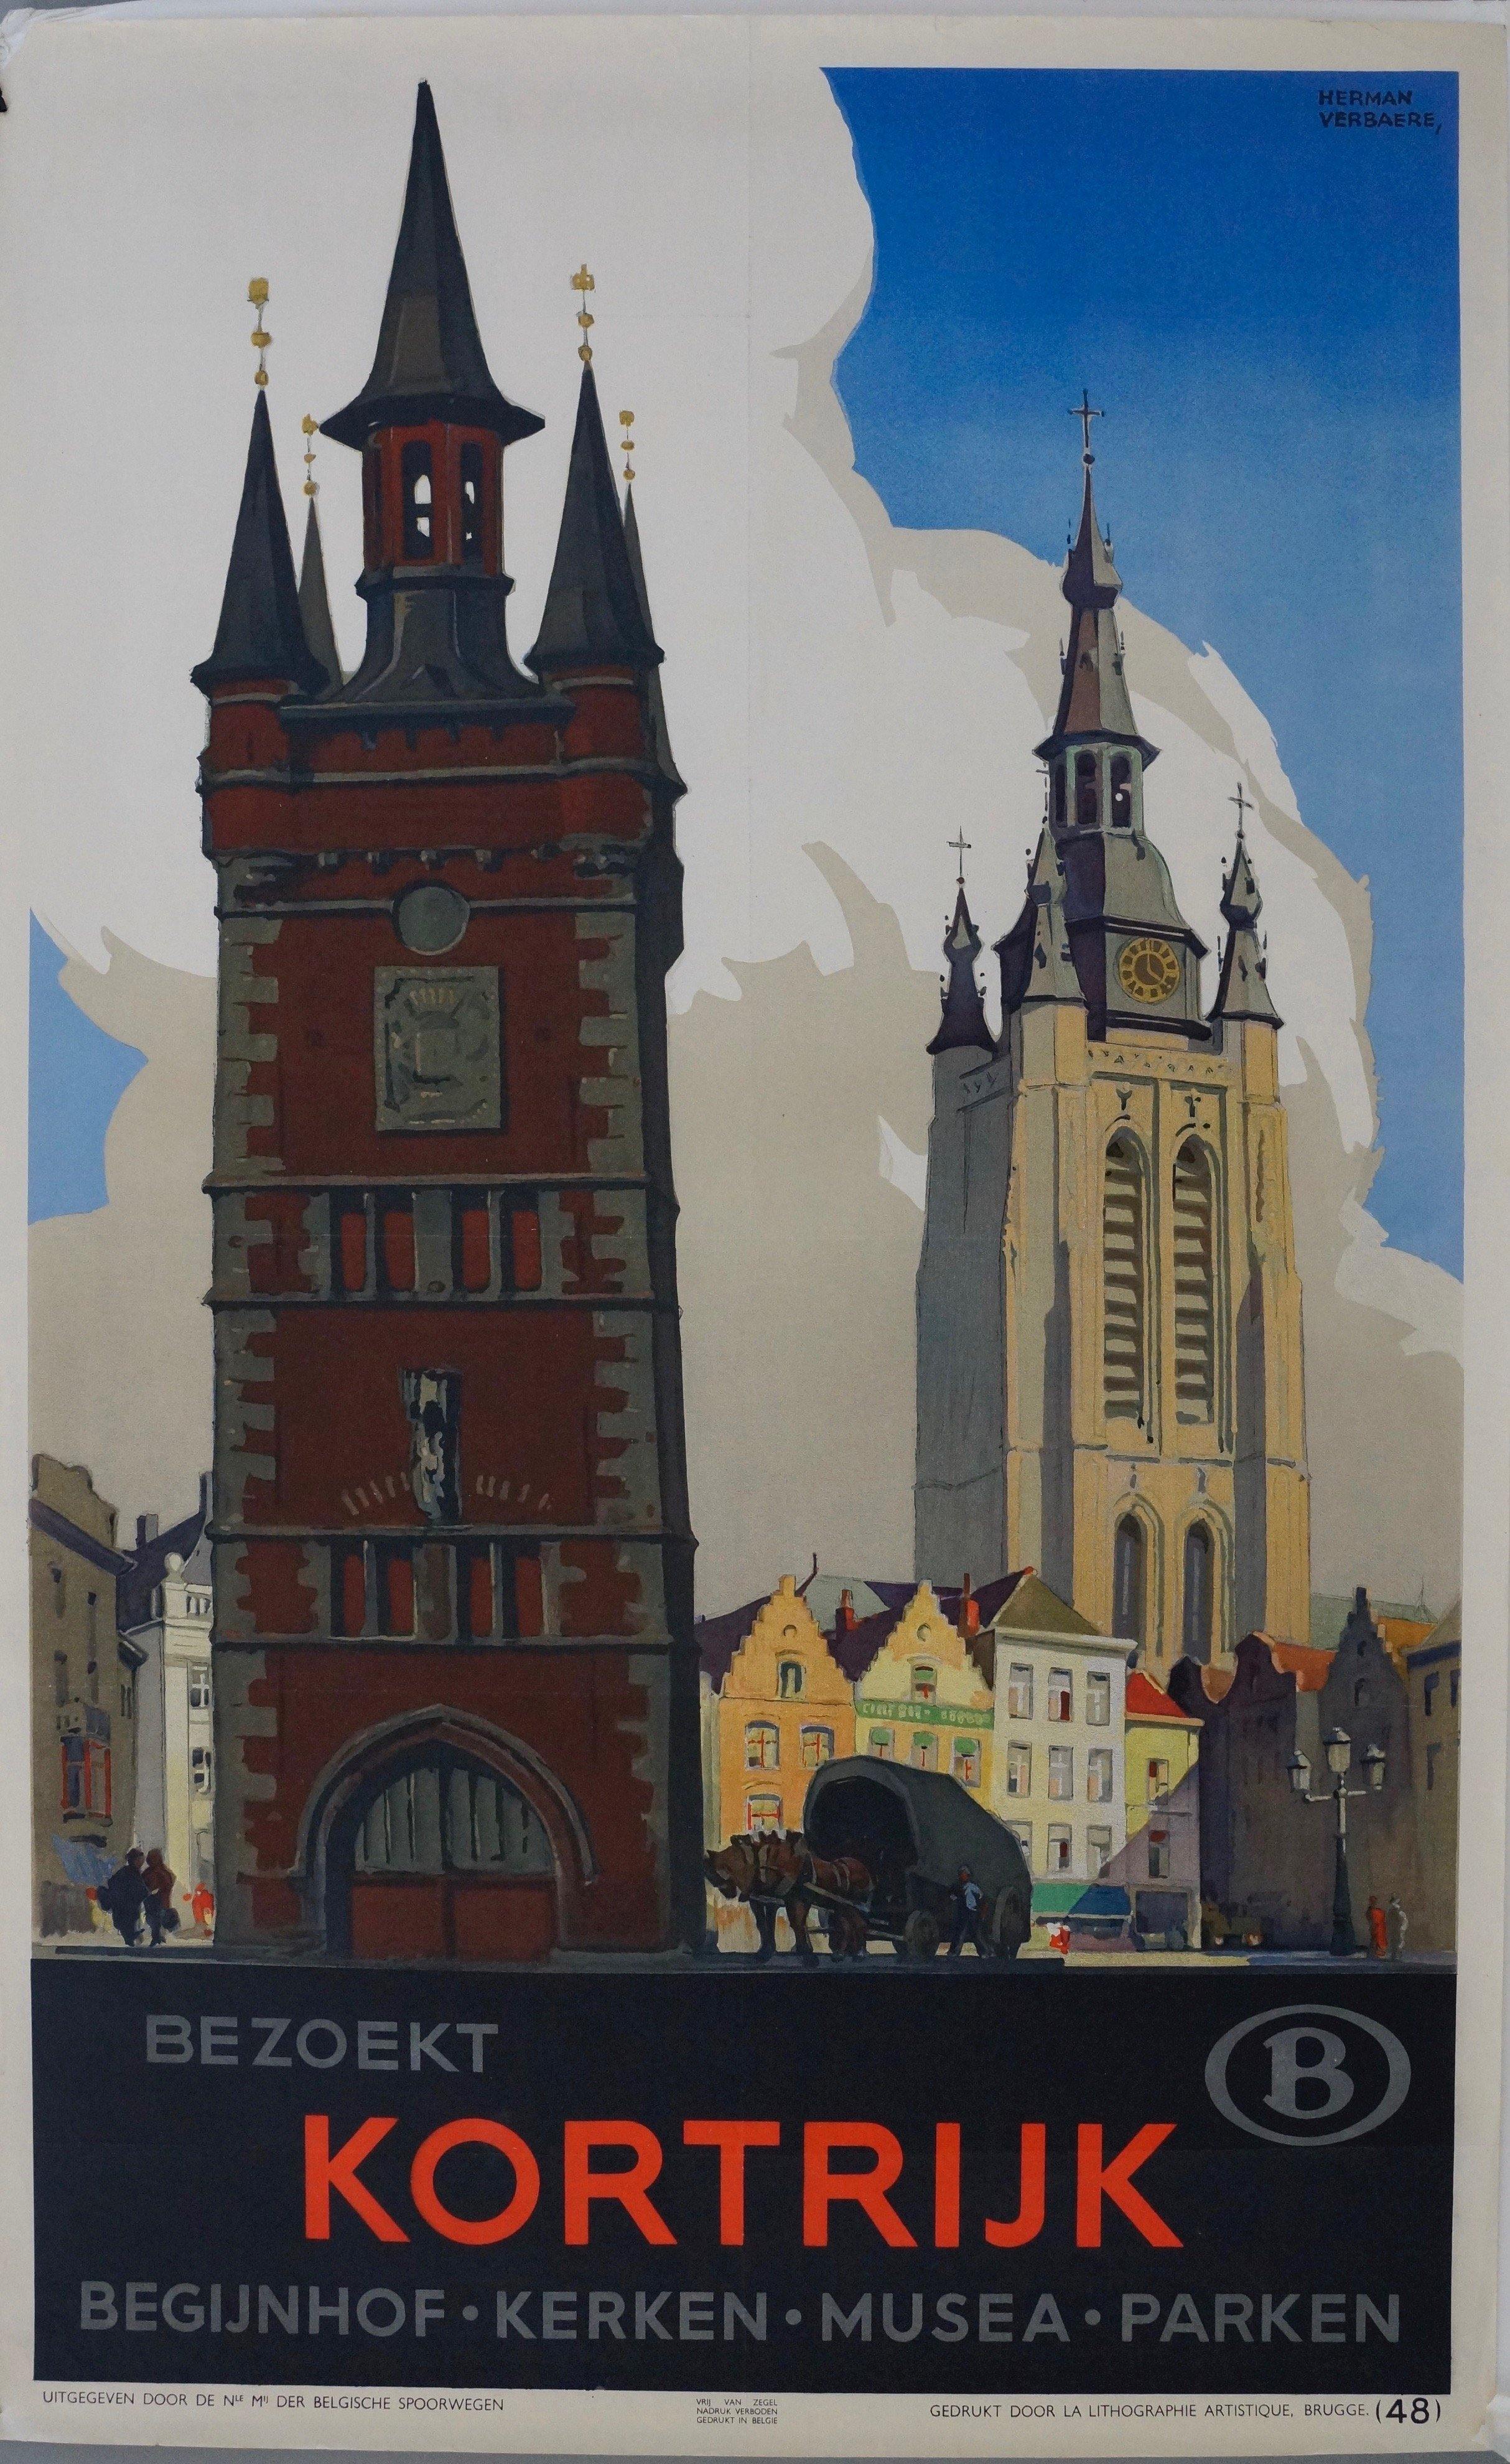 værst Formindske tak skal du have Bezoekt Kortrijk Begijnhof Kerken Musea Parken – Poster Museum